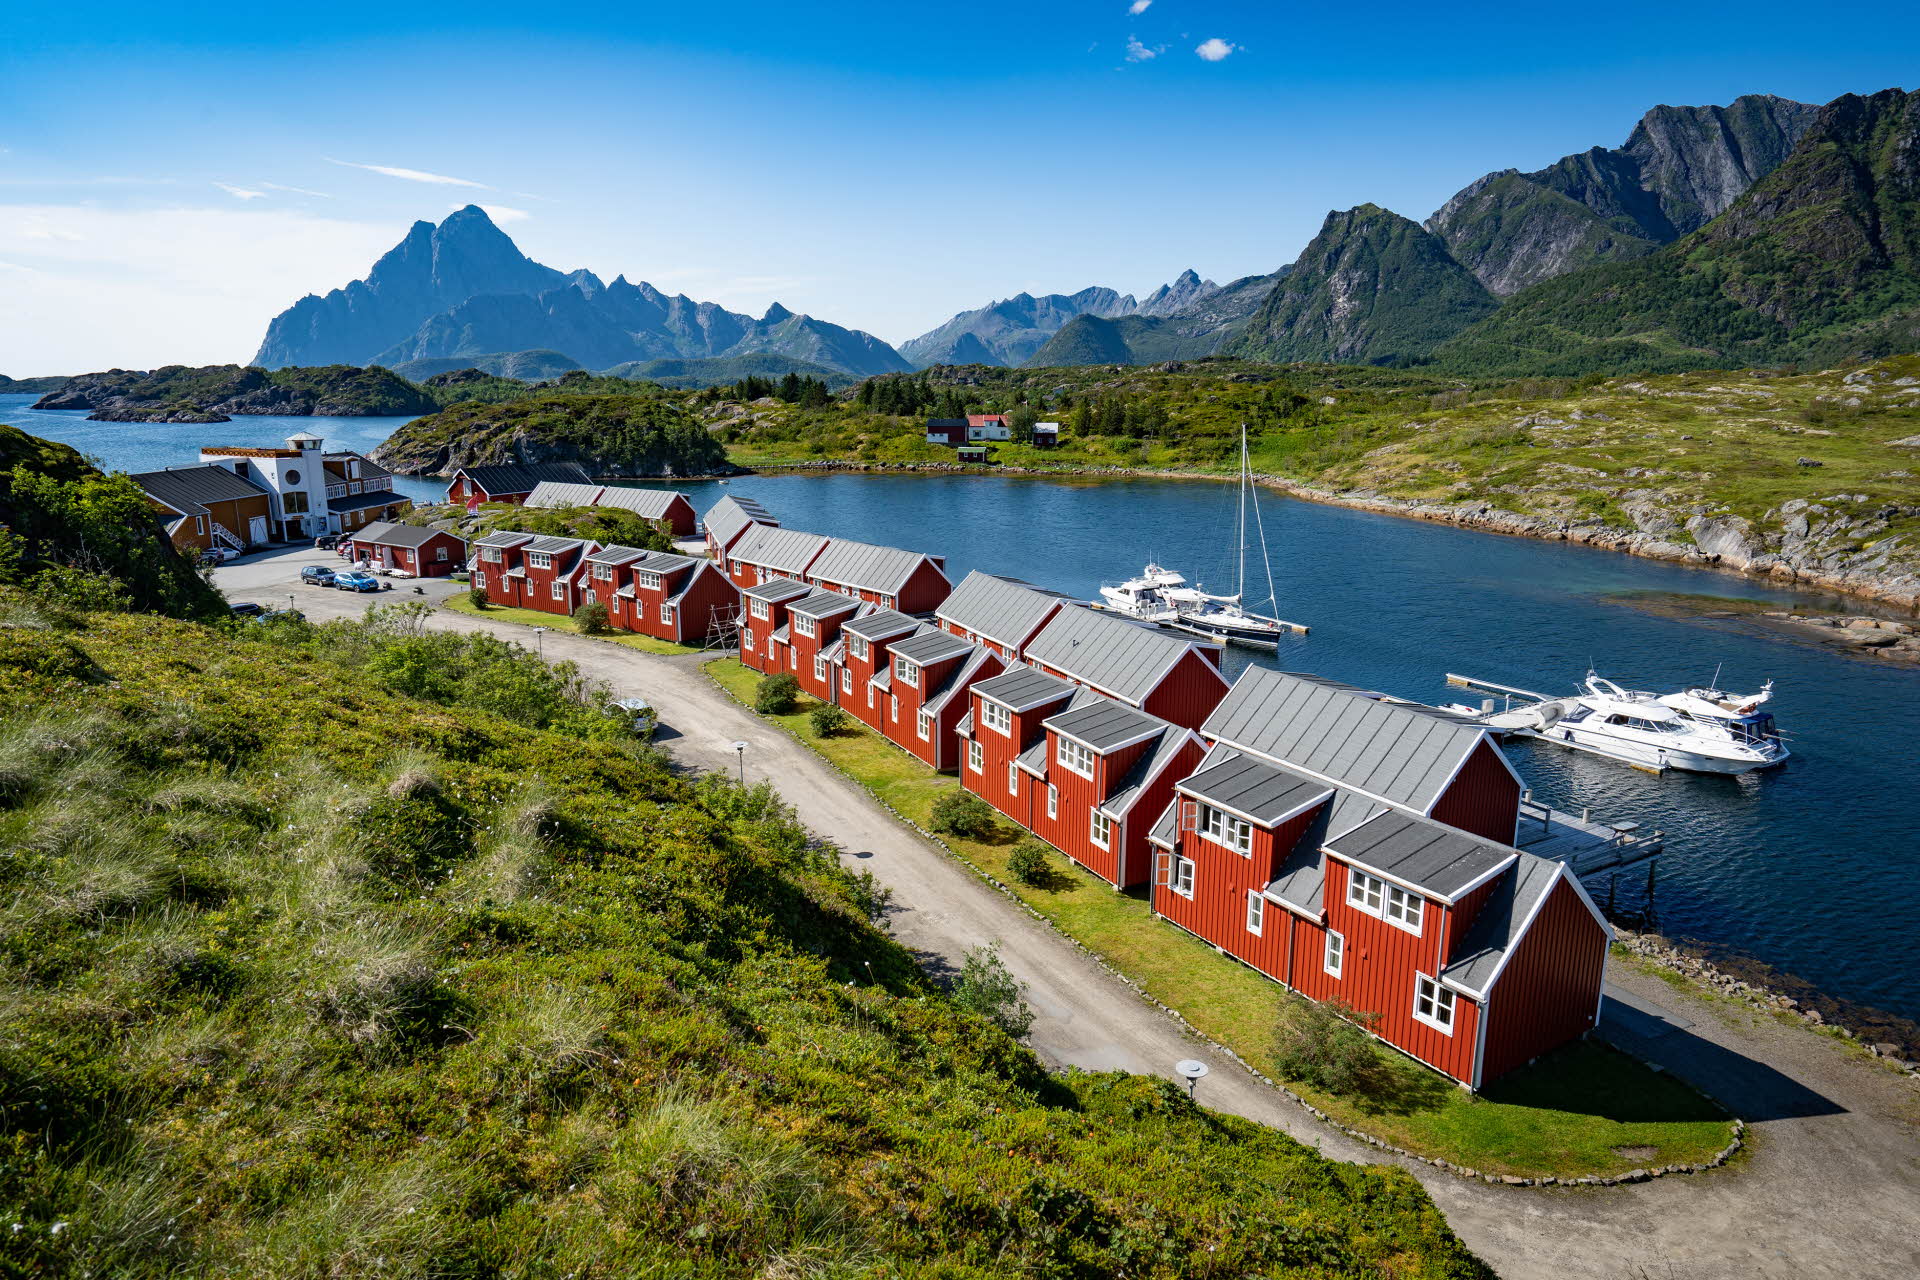 Les petites cabanes rouges du Nyvågar Rorbuhotell en bord de mer, avec des montagnes à l’horizon.